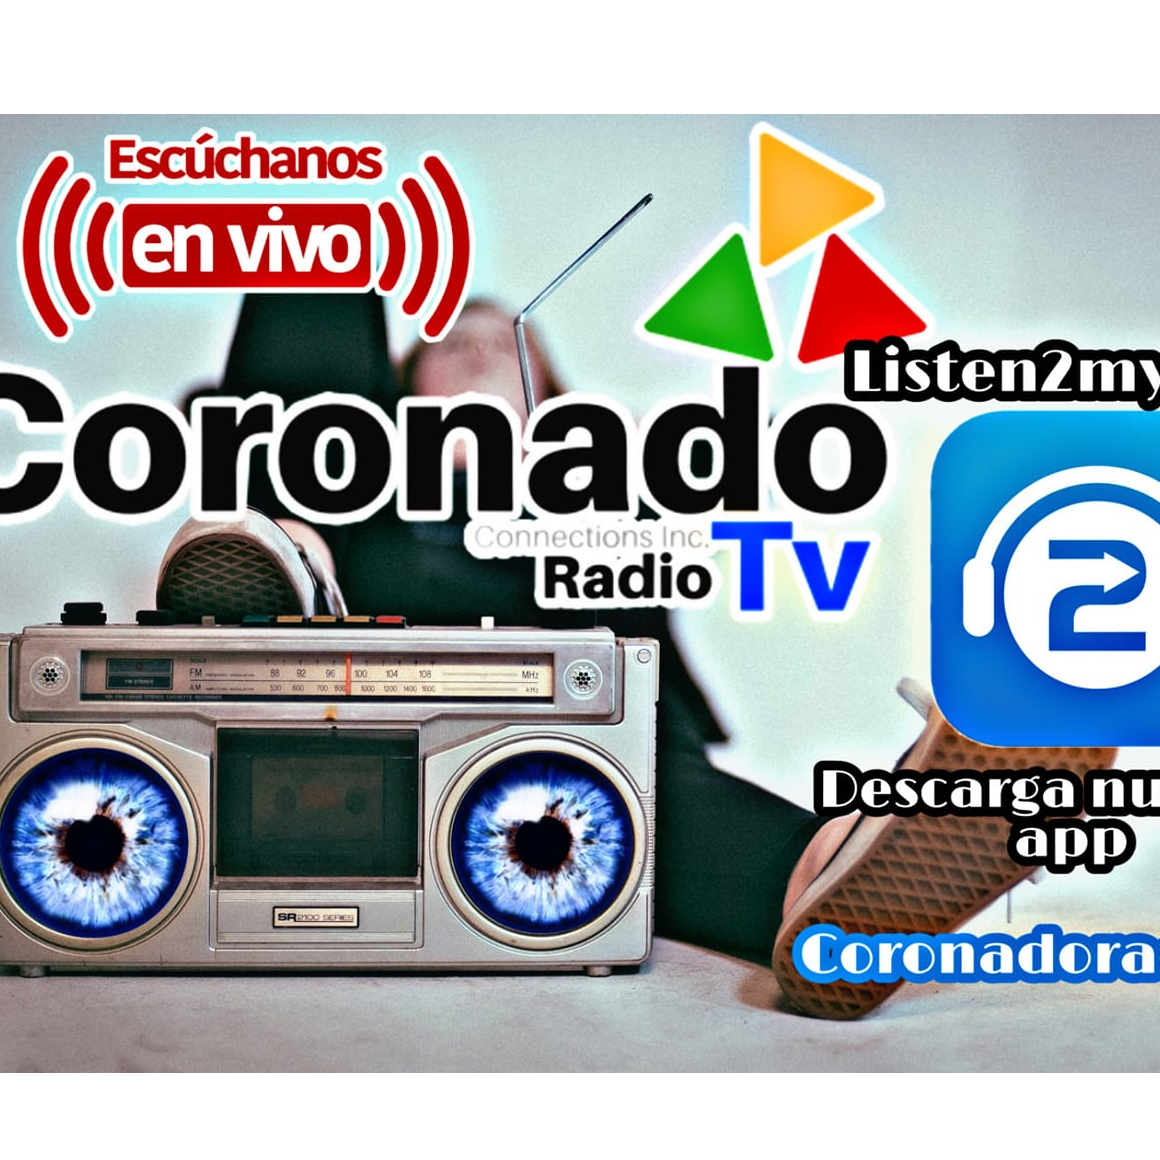 Coronado Radio TV